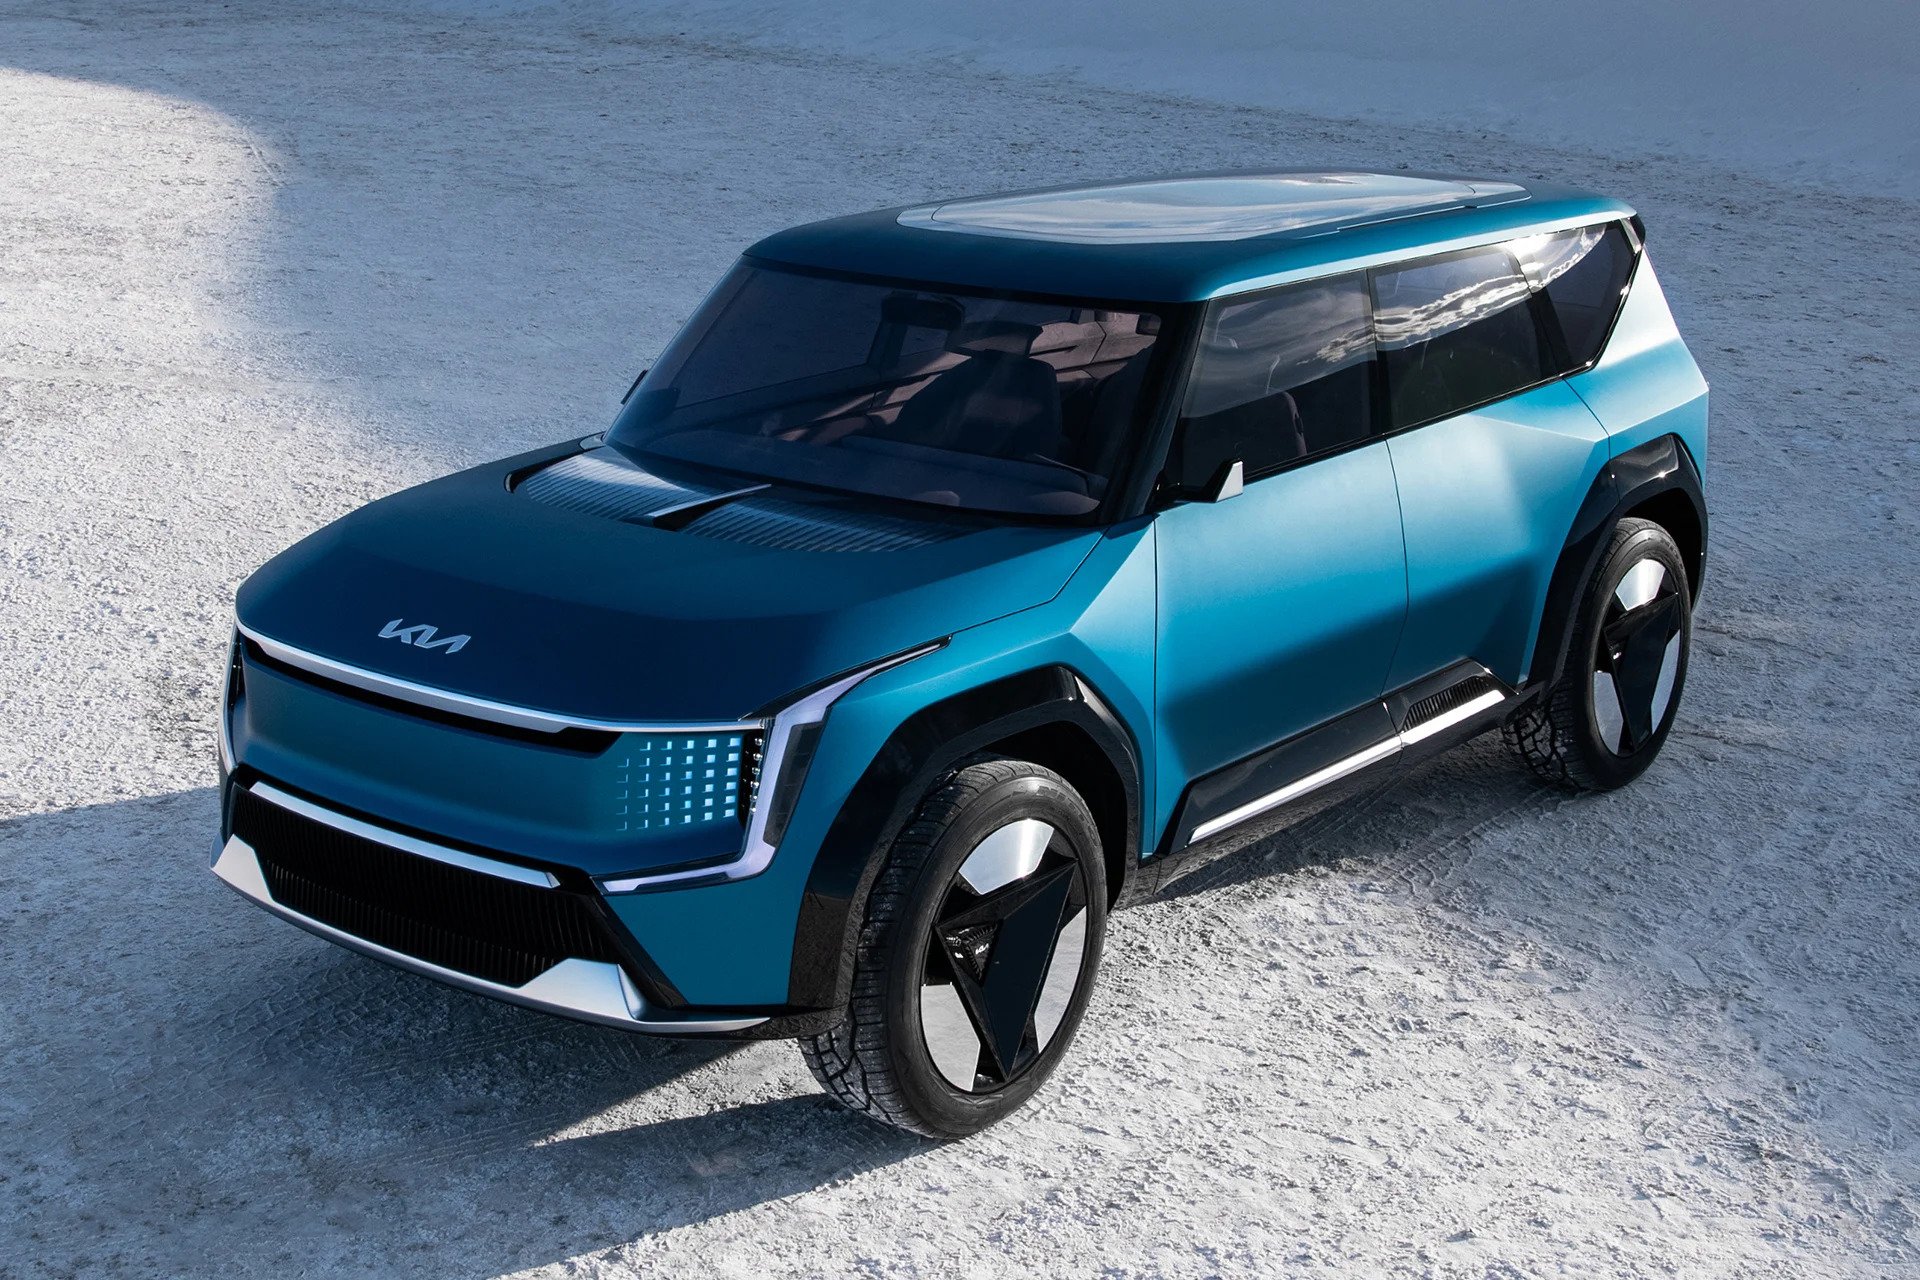 Το ηλεκτρικό SUV Concept της Kia περιλαμβάνει οθόνη 27 ιντσών